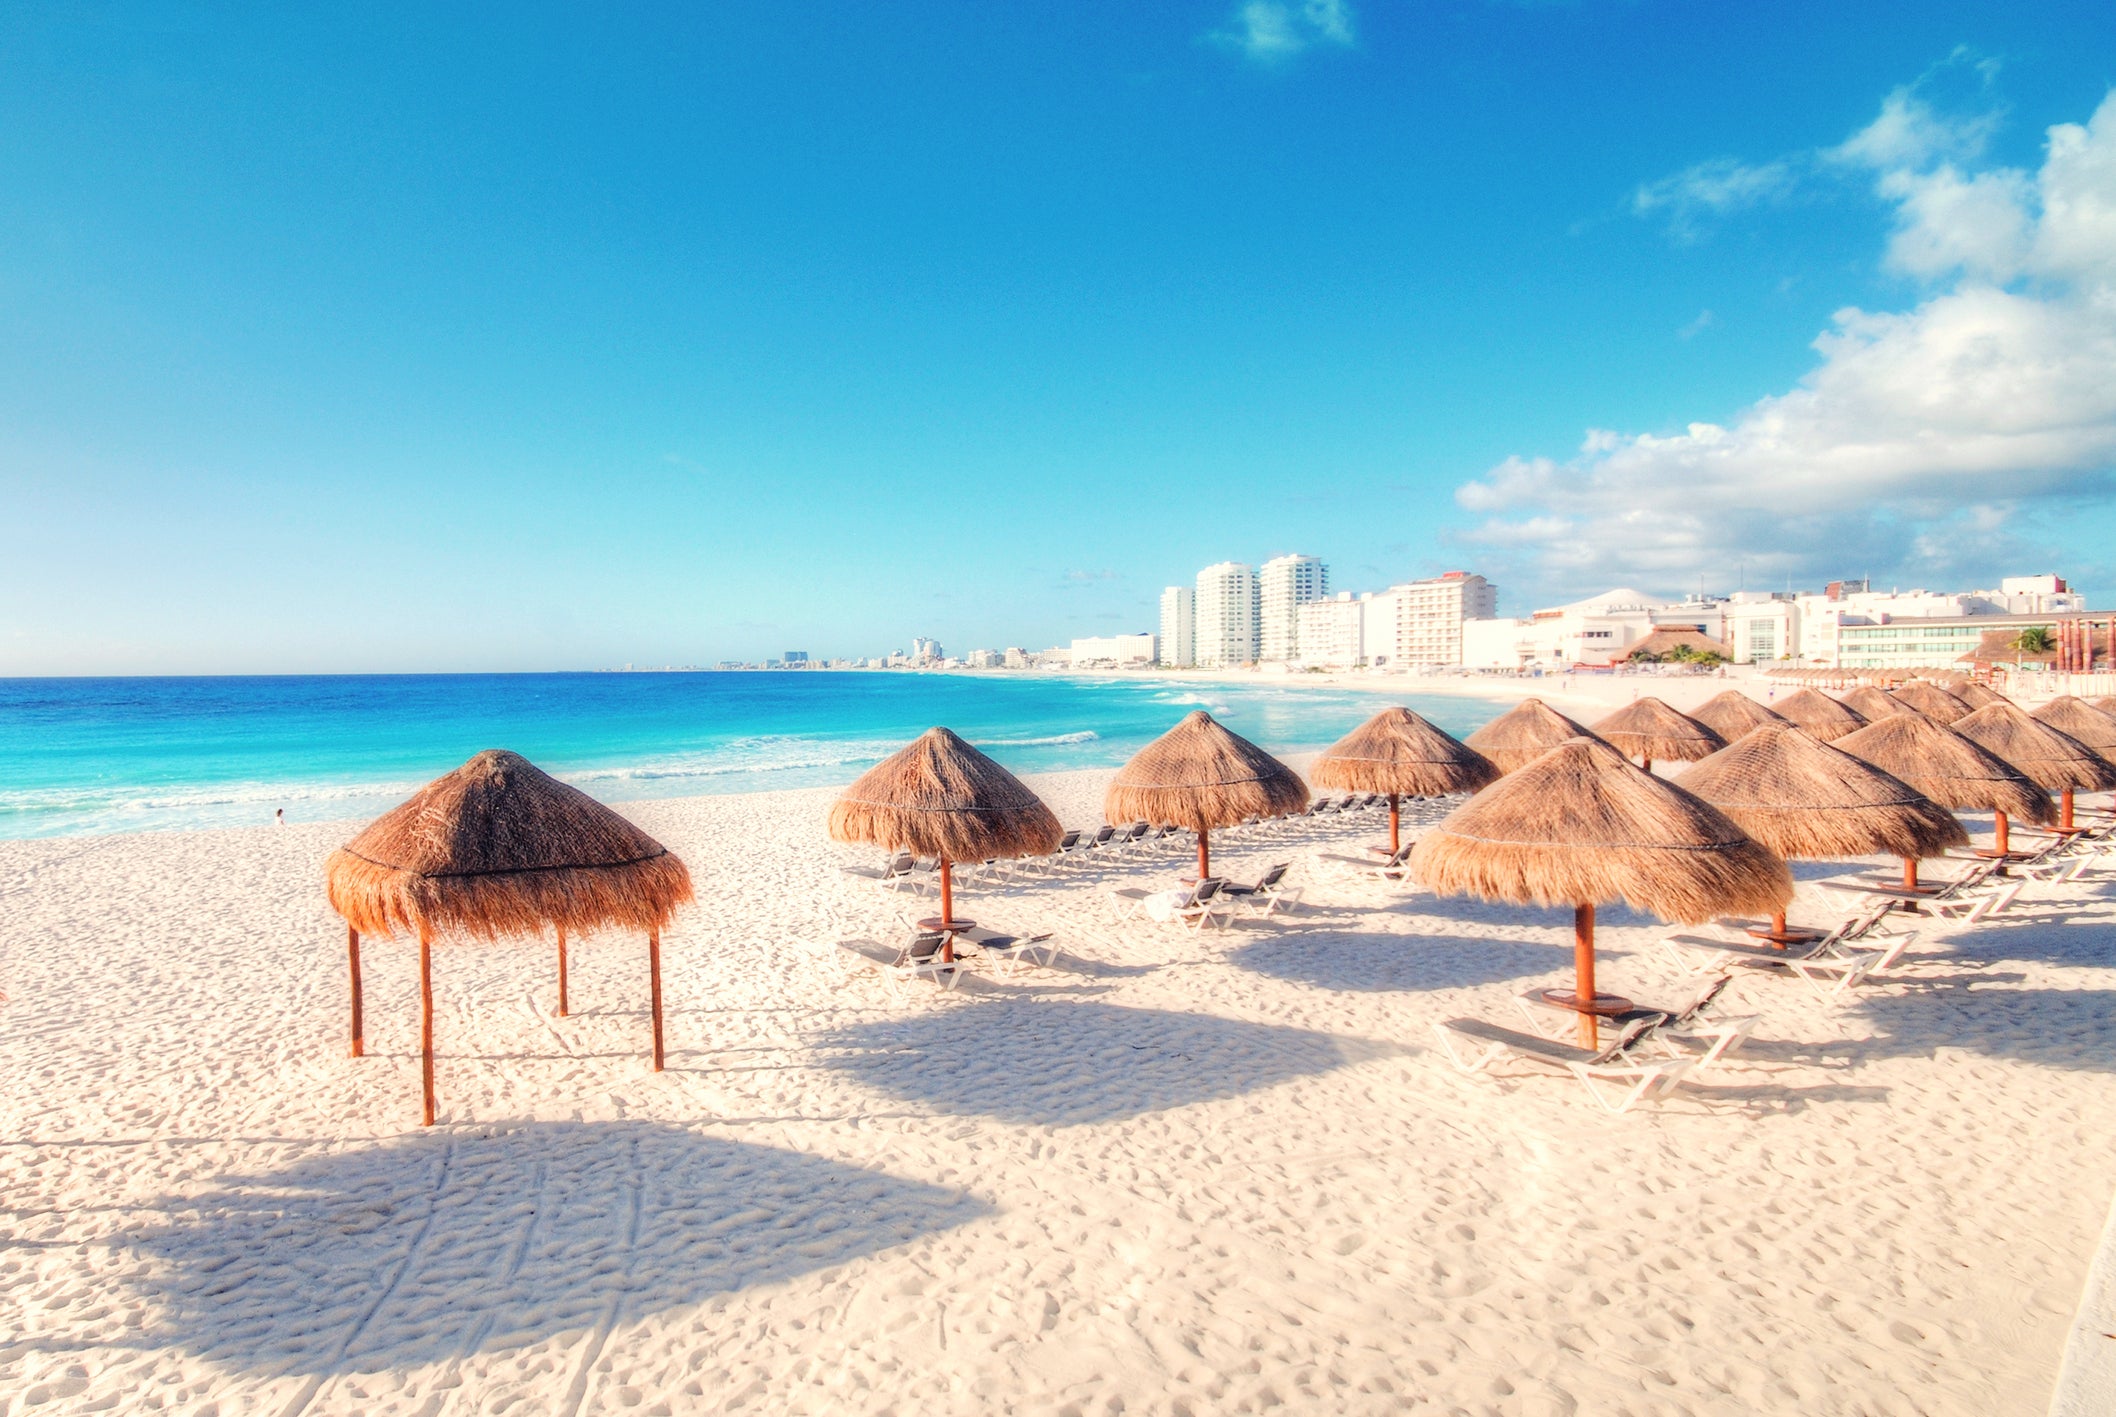 Cancun beach, Mexico